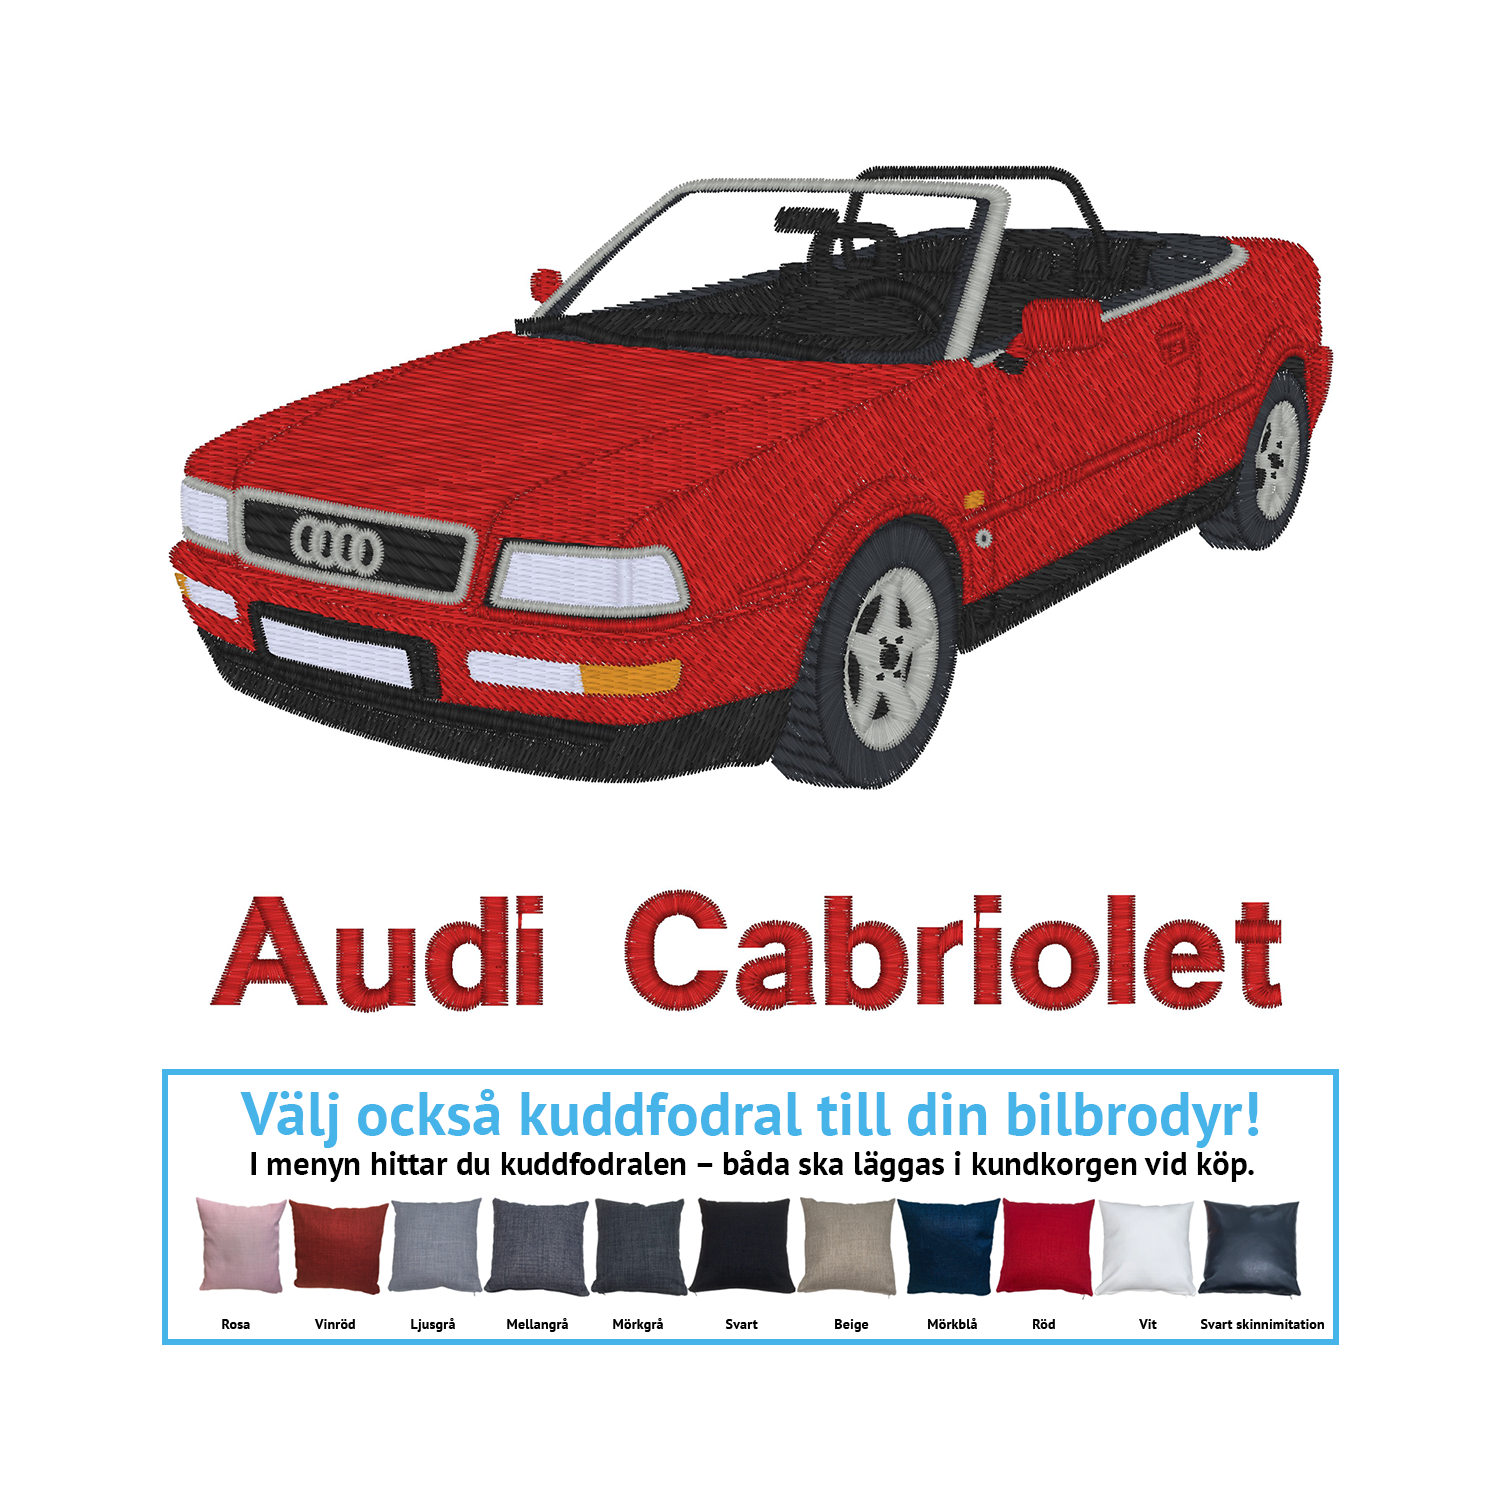 Audi Cabriolet, 1992